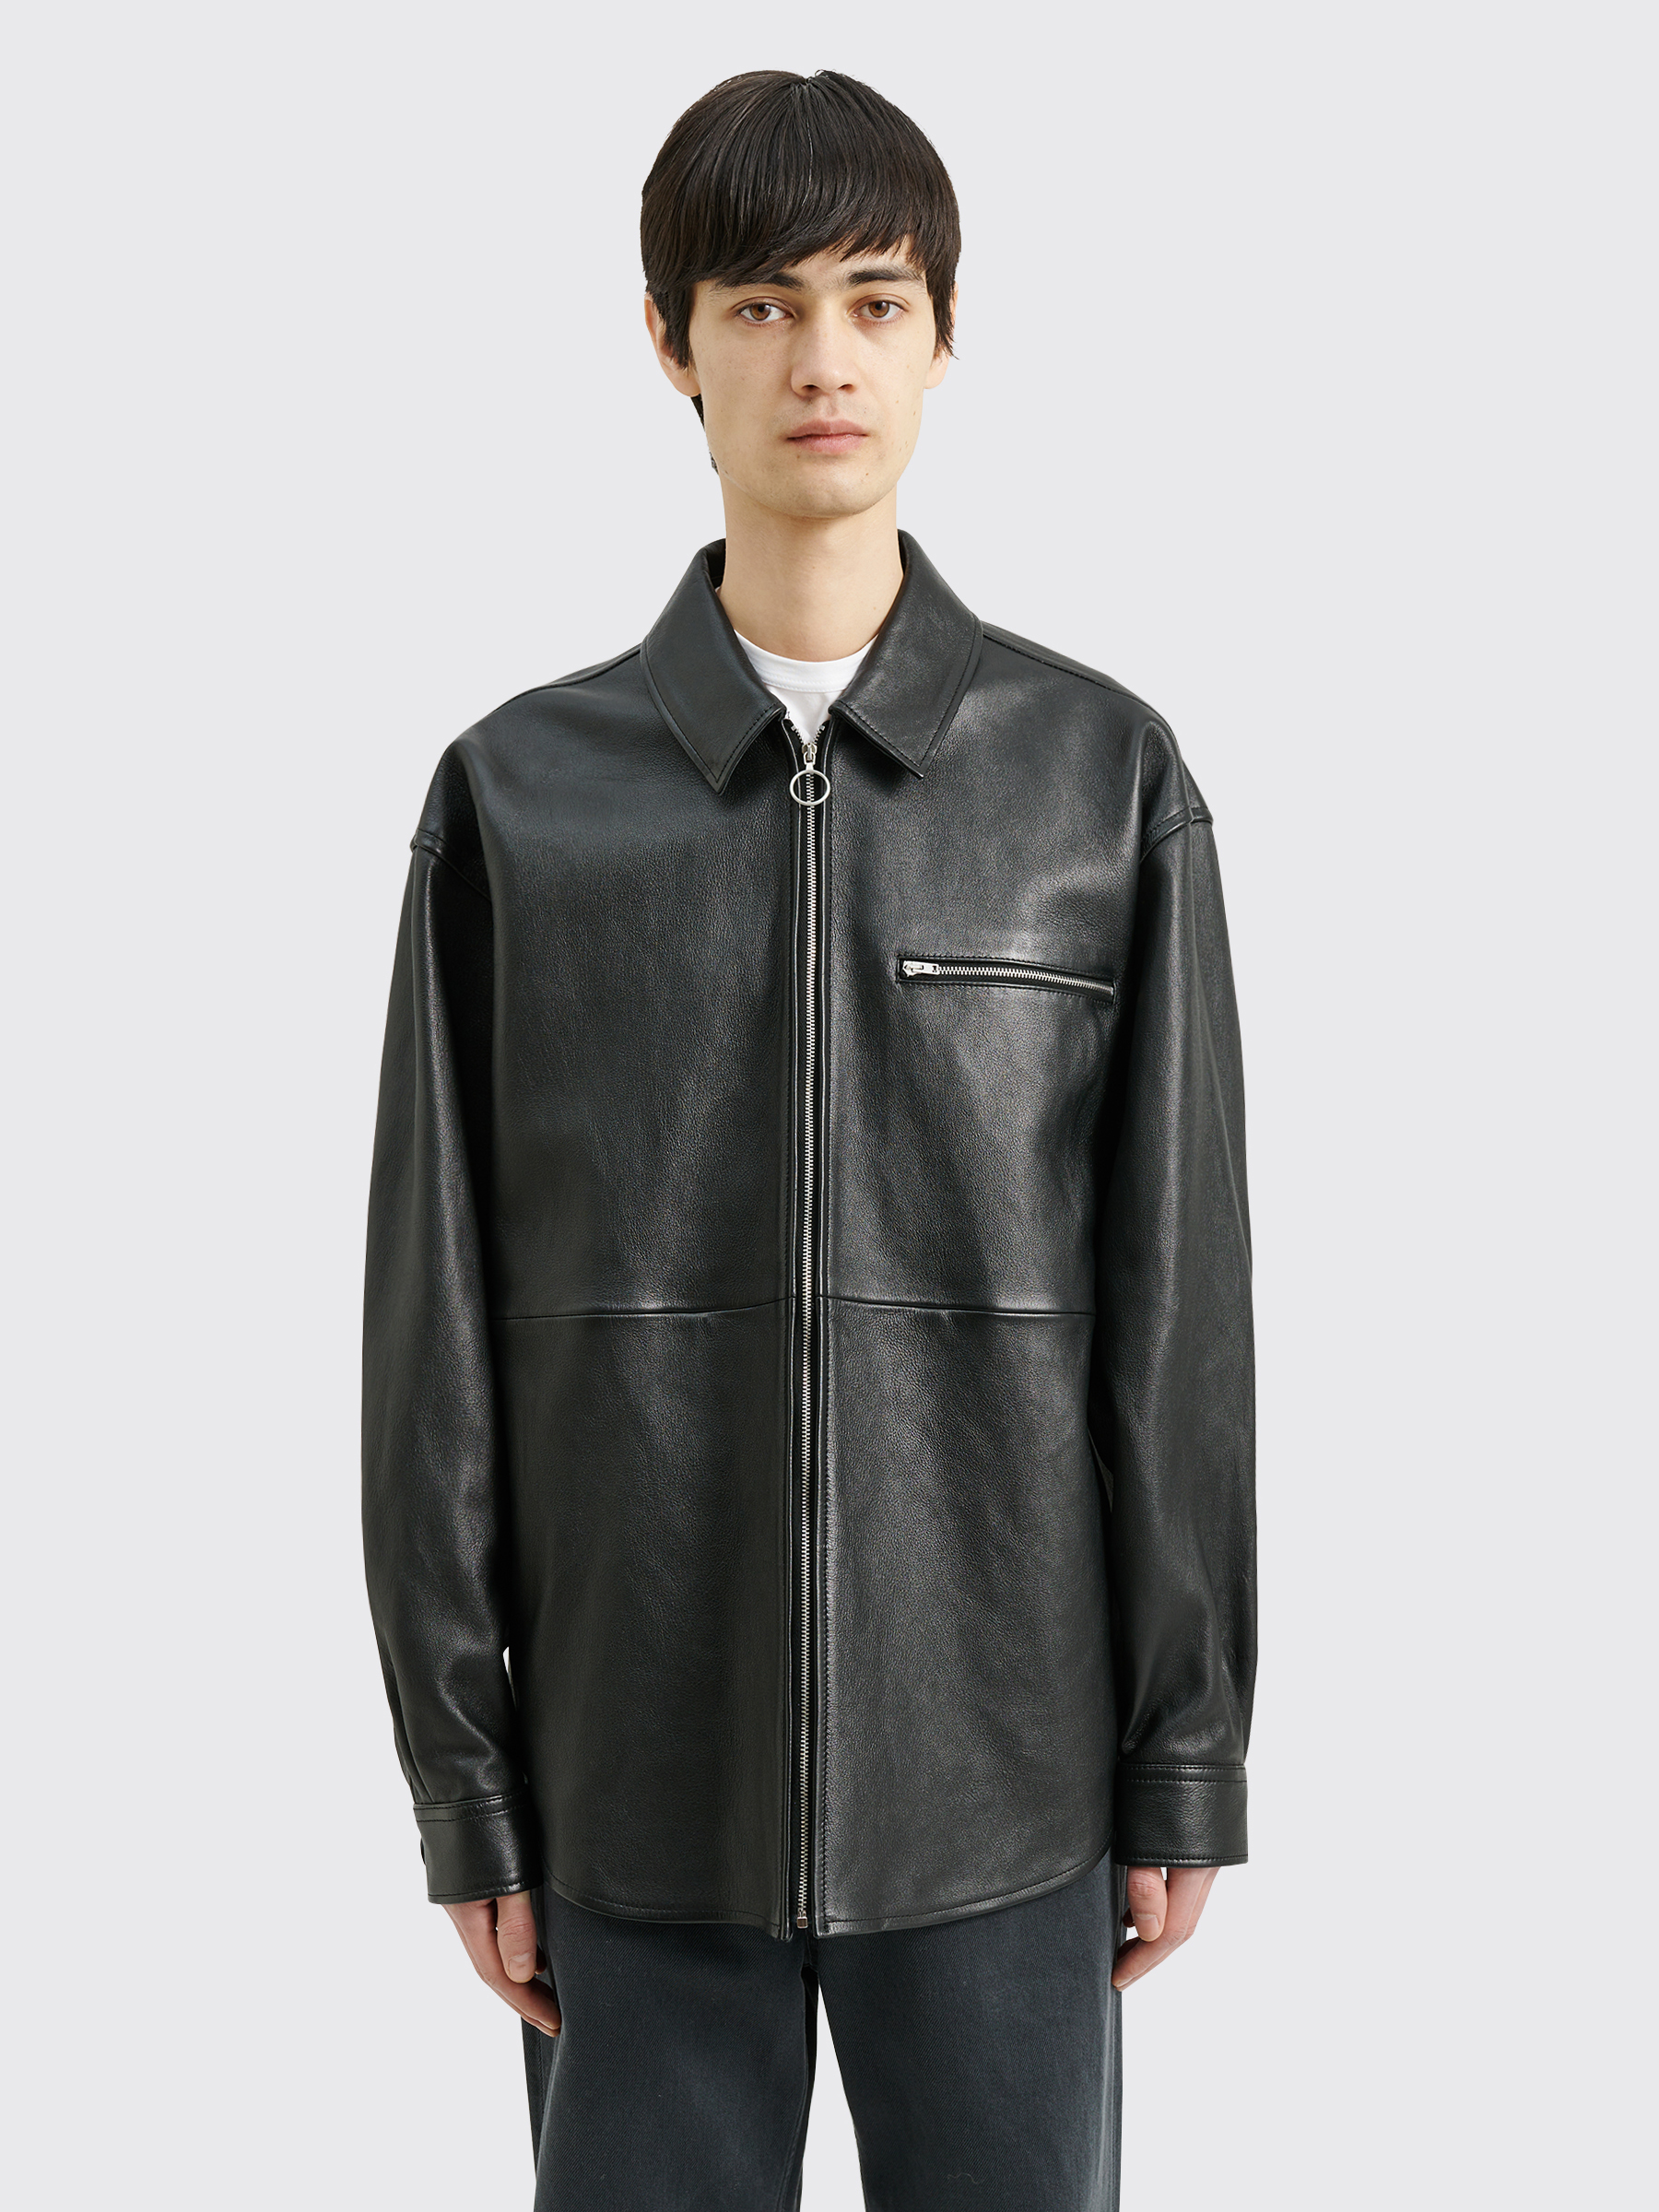 Très Bien - Acne Studios Leather Overshirt Black